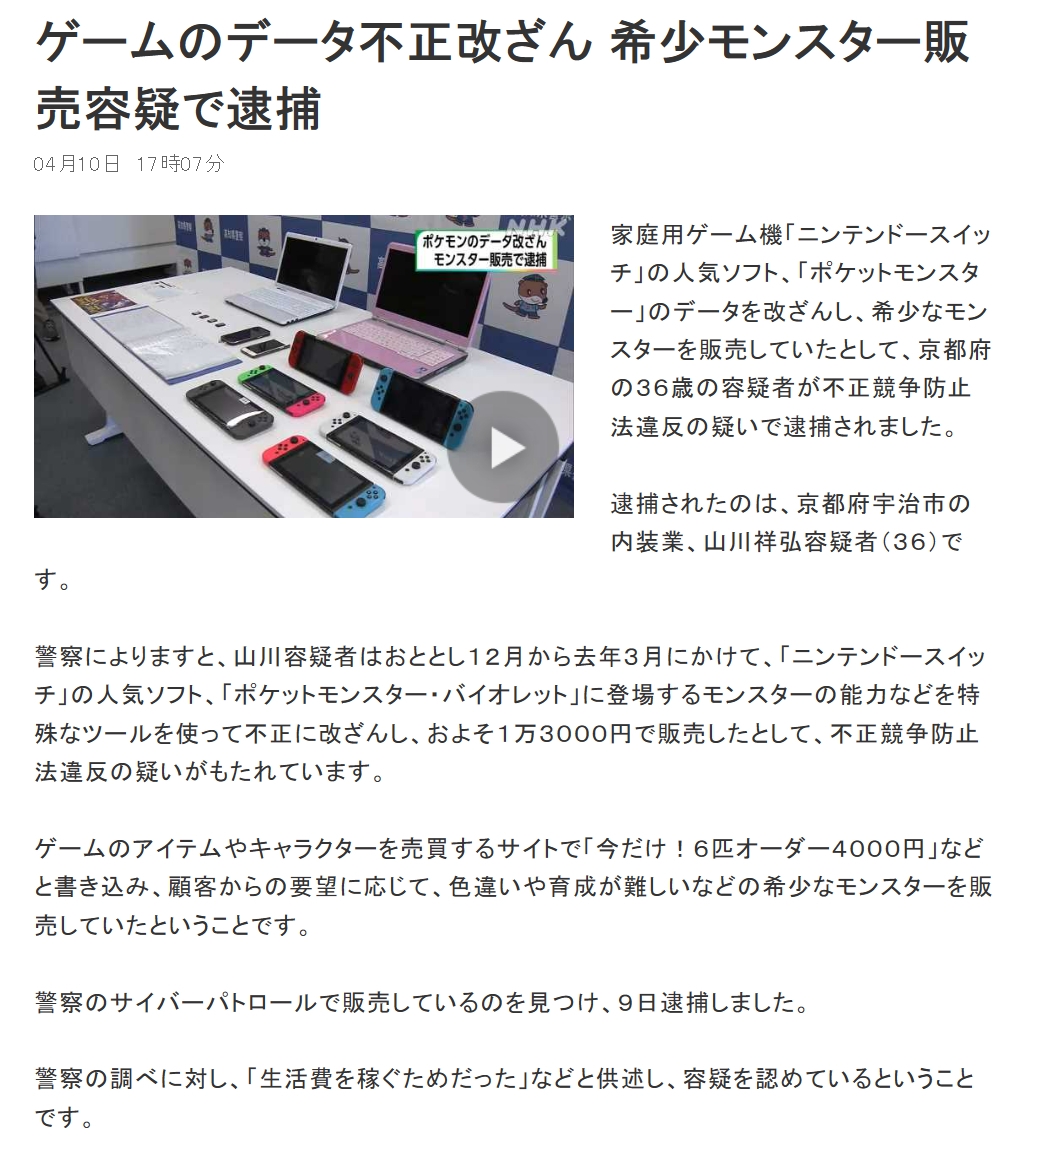 日本一男子因纂改NS游戏内数据，出售稀有宝可梦而被日本警方逮捕